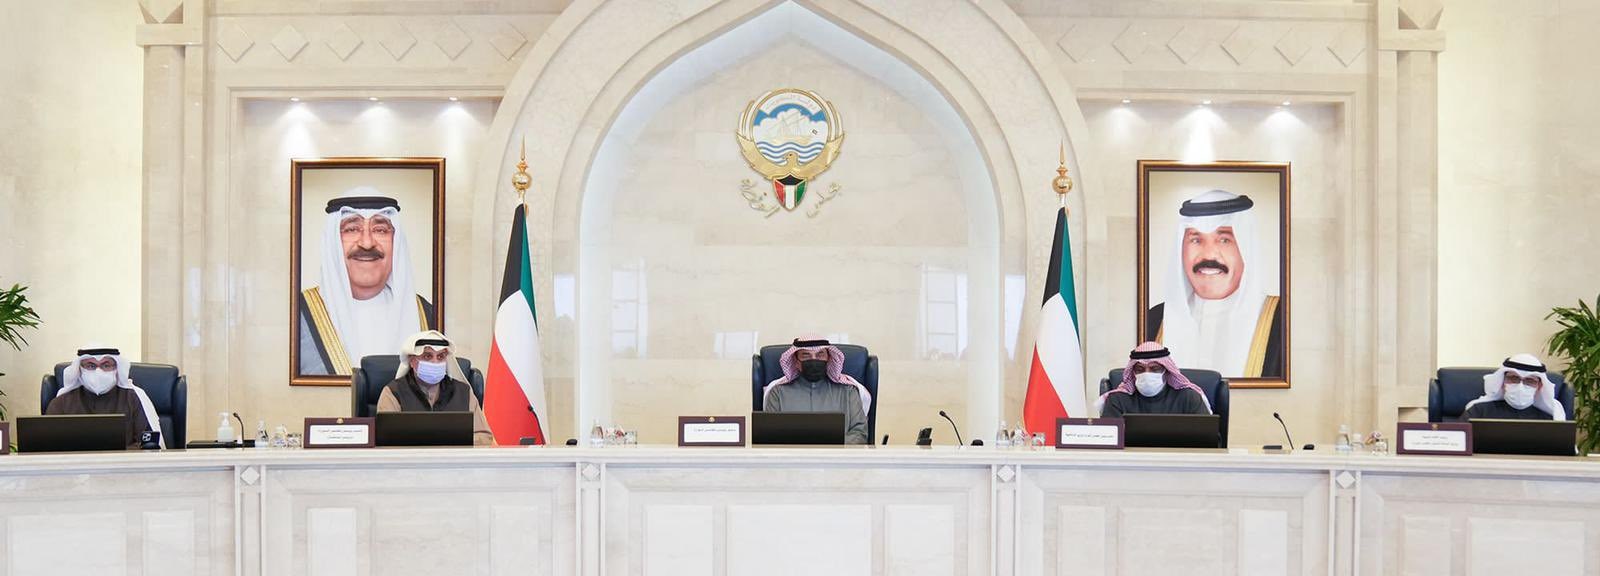 صورة لأول جلسة لمجلس الوزراء الكويتي (كونا)